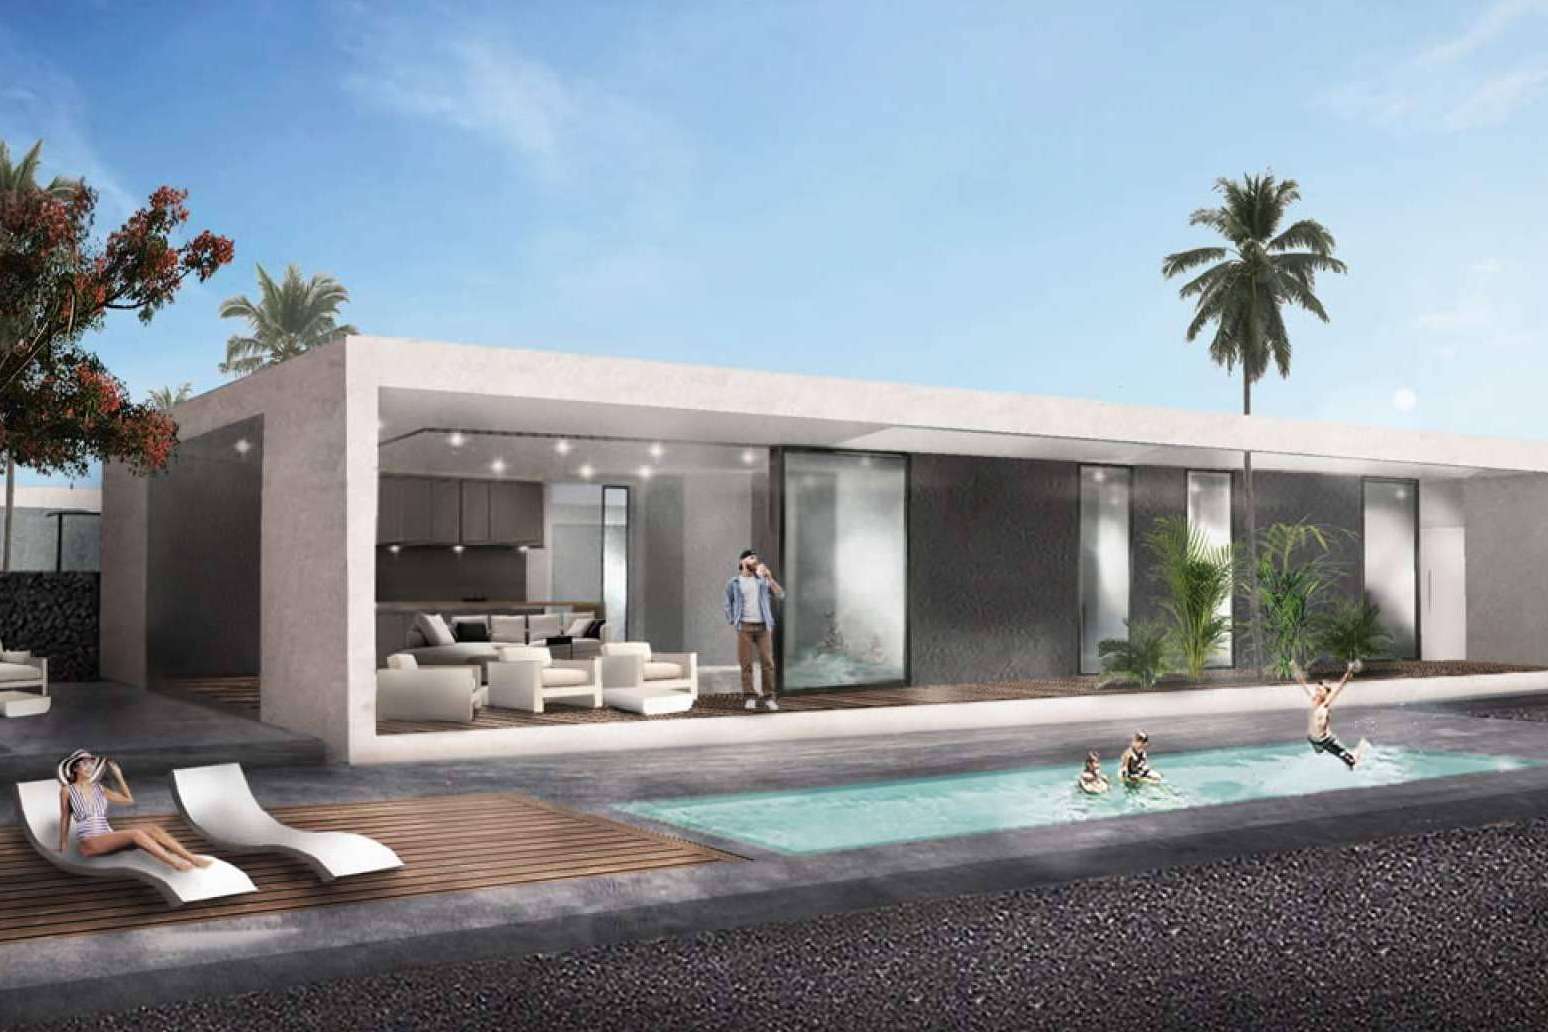 Villas en venta en Fuerteventura, exclusividad, lujo y tranquilidad en Costa Tinaya